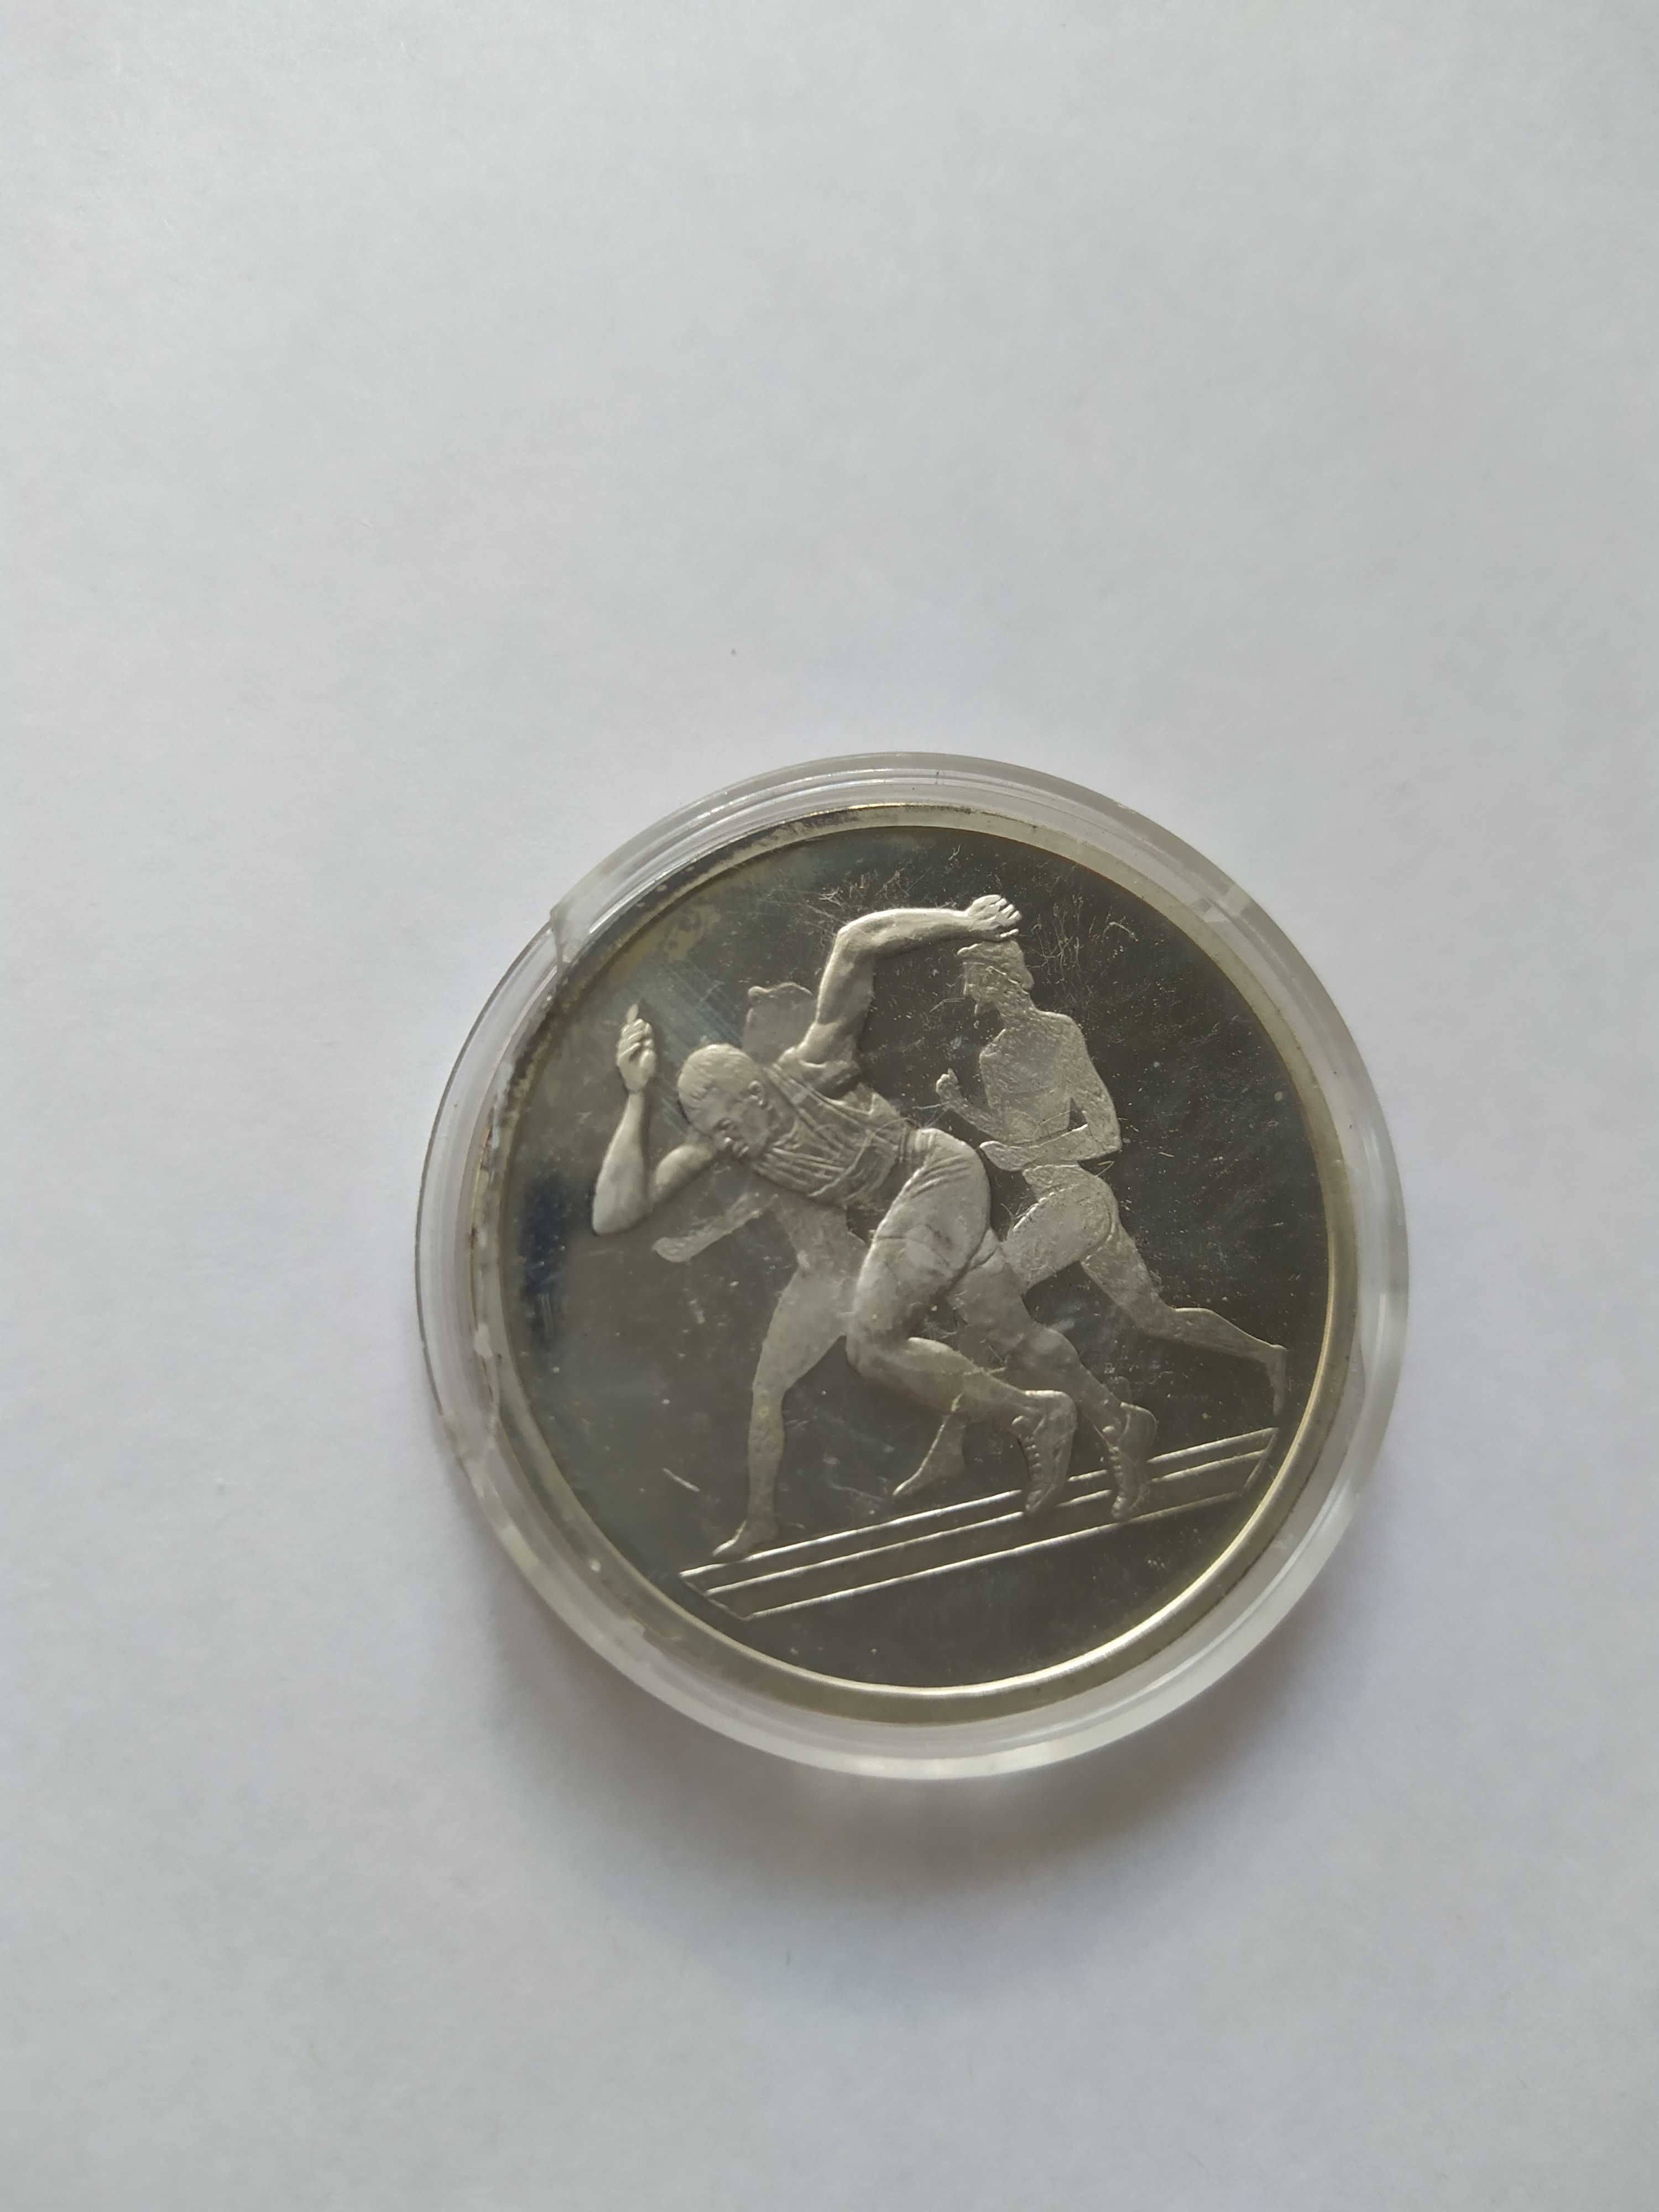 срiбна монета 10 Евро " Лiтнi Олiмпiйськi iгри 2004 року в Афiнах"